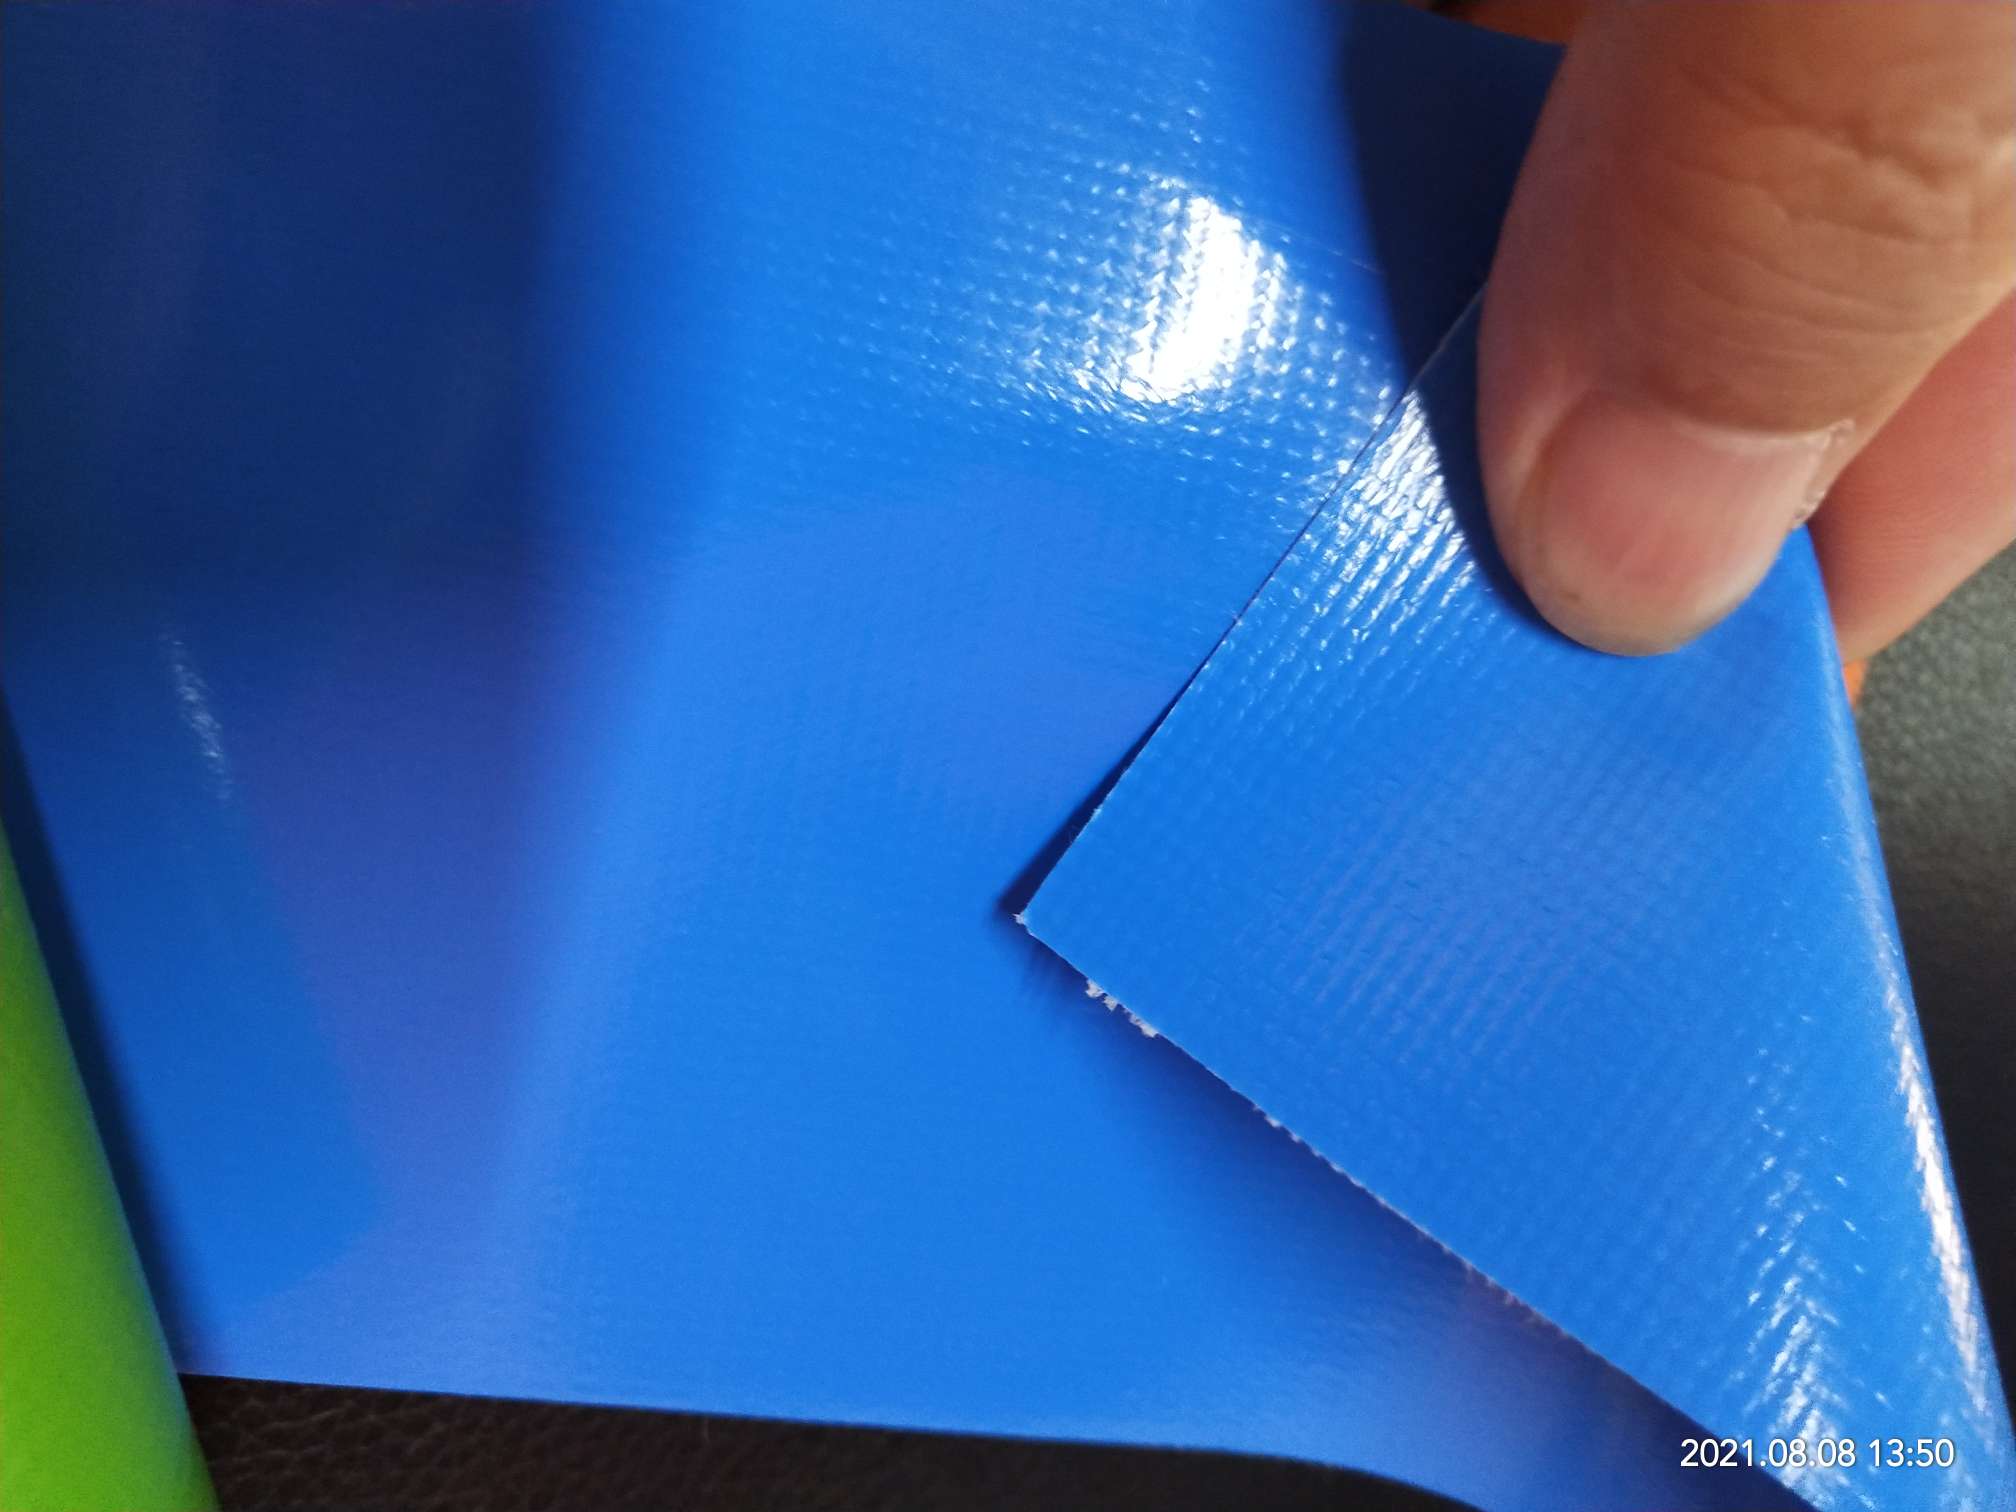 优质光面0.47mm厚浅蓝色PVC夹网布  箱包布  机器罩家具罩  体育游乐产品  格种箱包袋专用面料详情图2